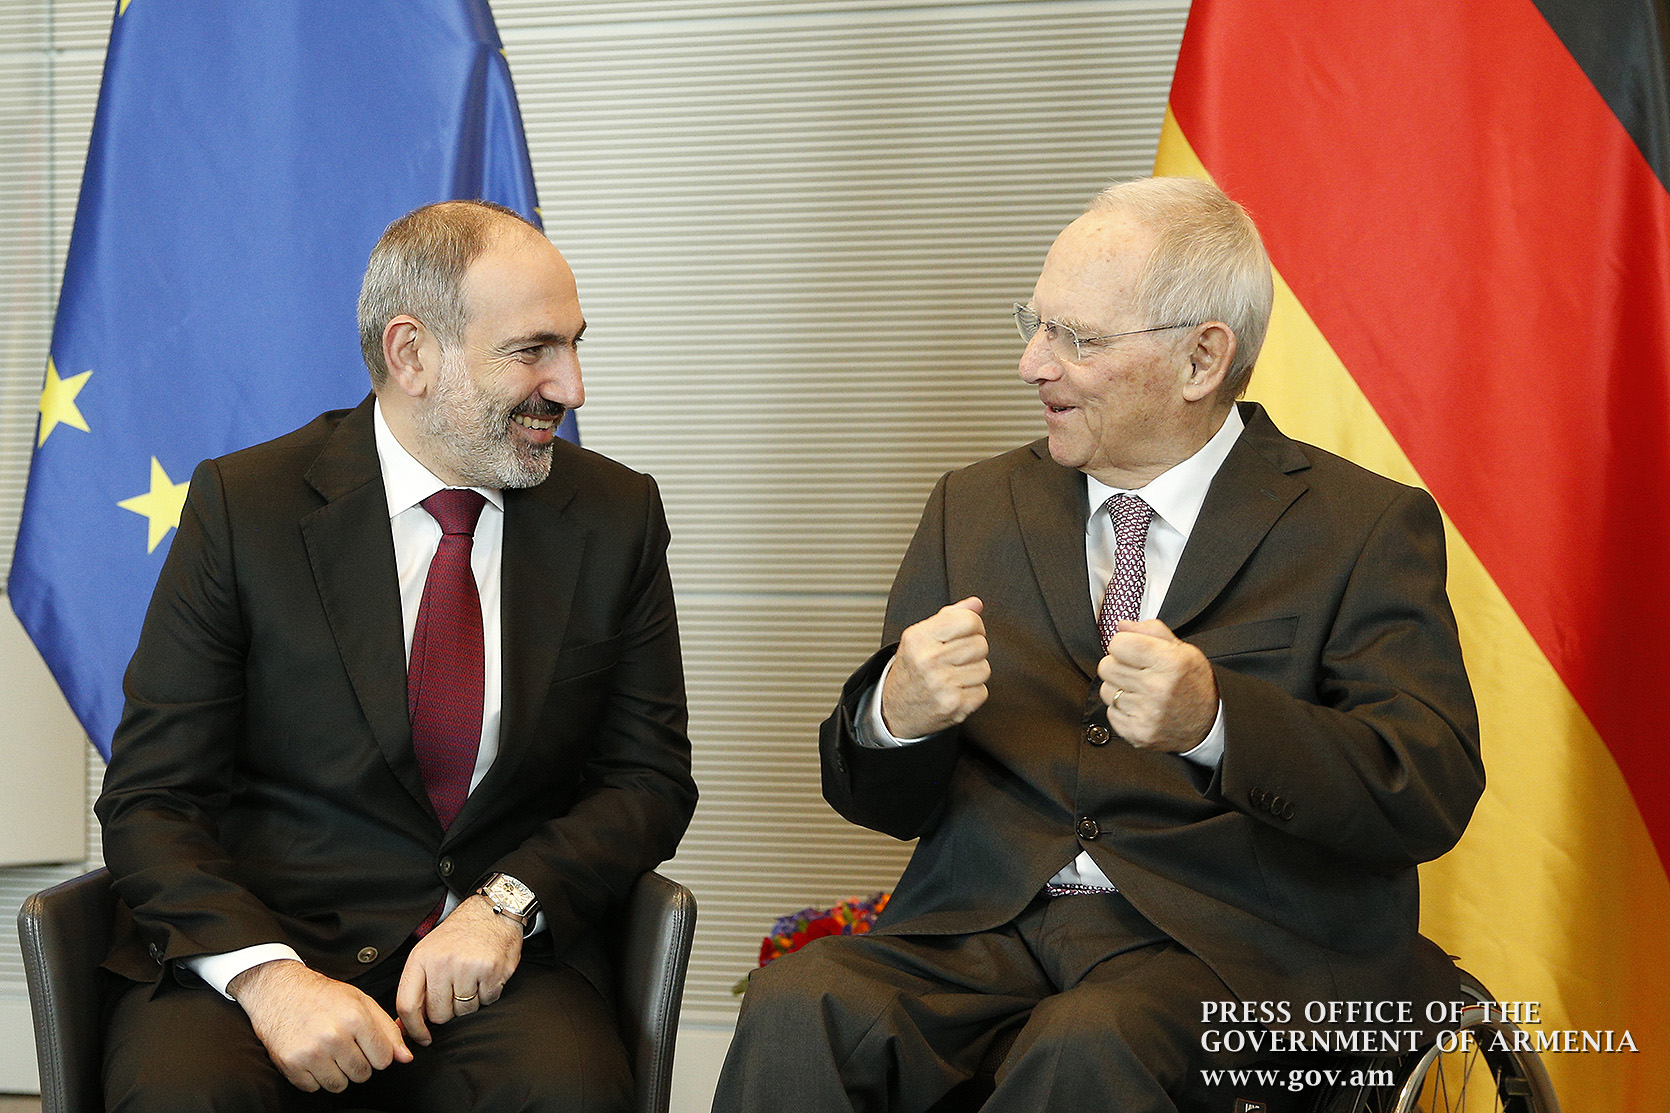 Германия поддерживает судебно-правовые реформы в Армении: Вольфганг Шойбле — Николу Пашиняну